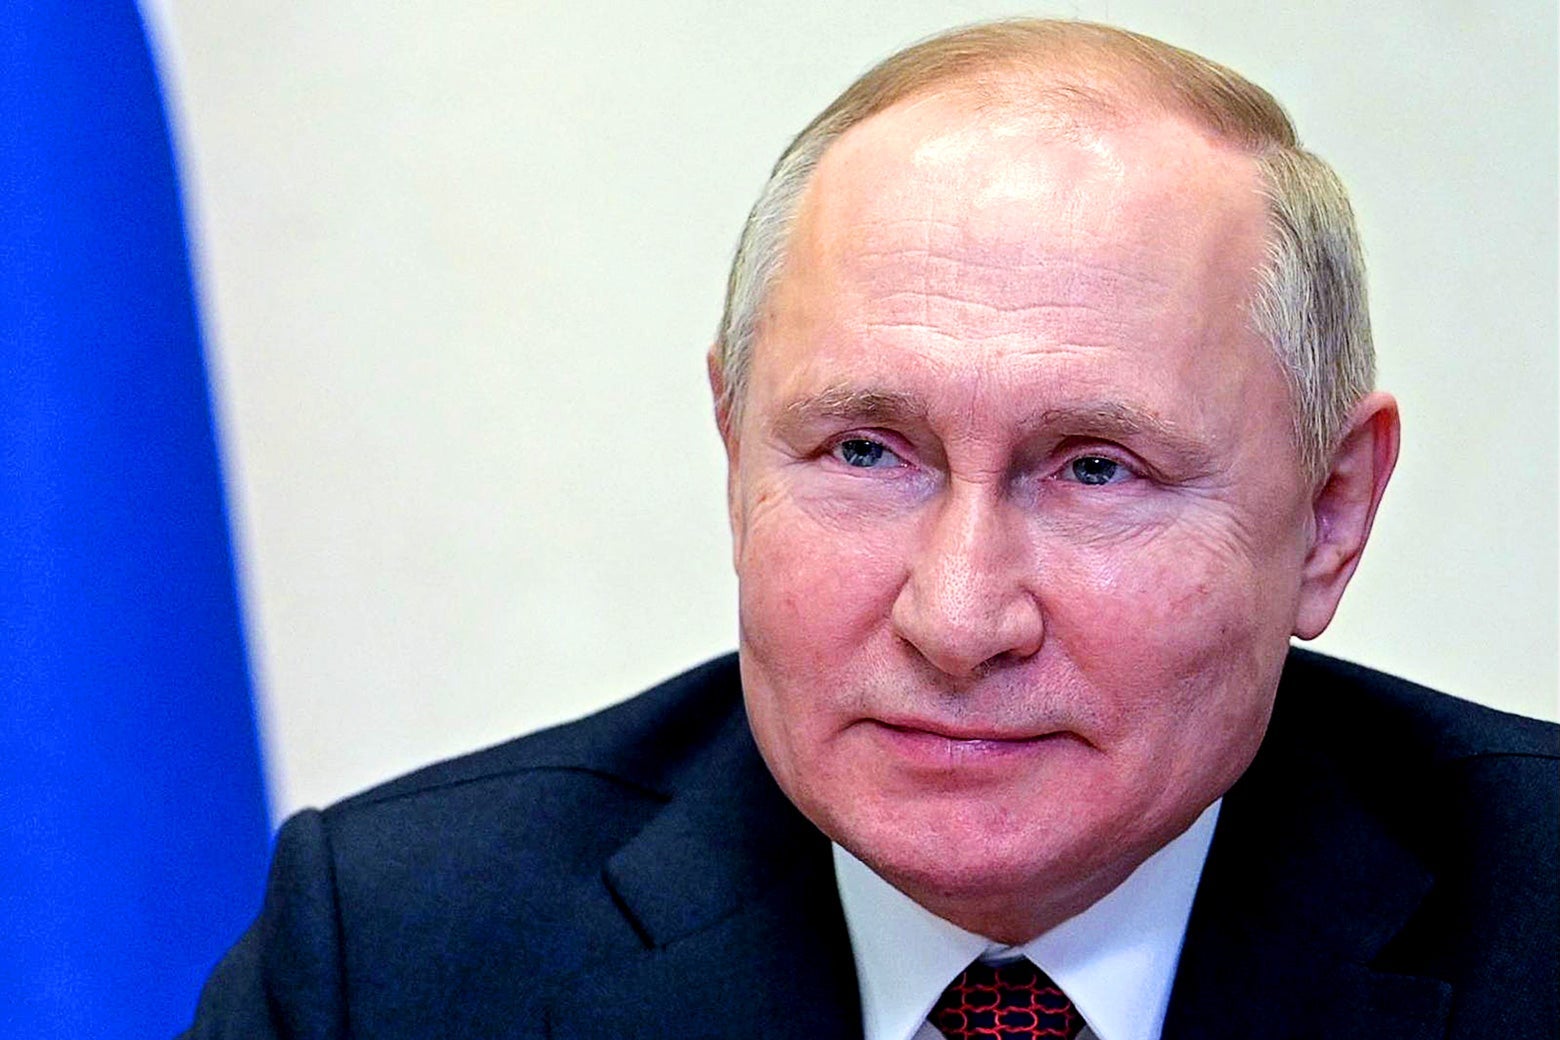 A close-up of President Vladimir Putin's face.